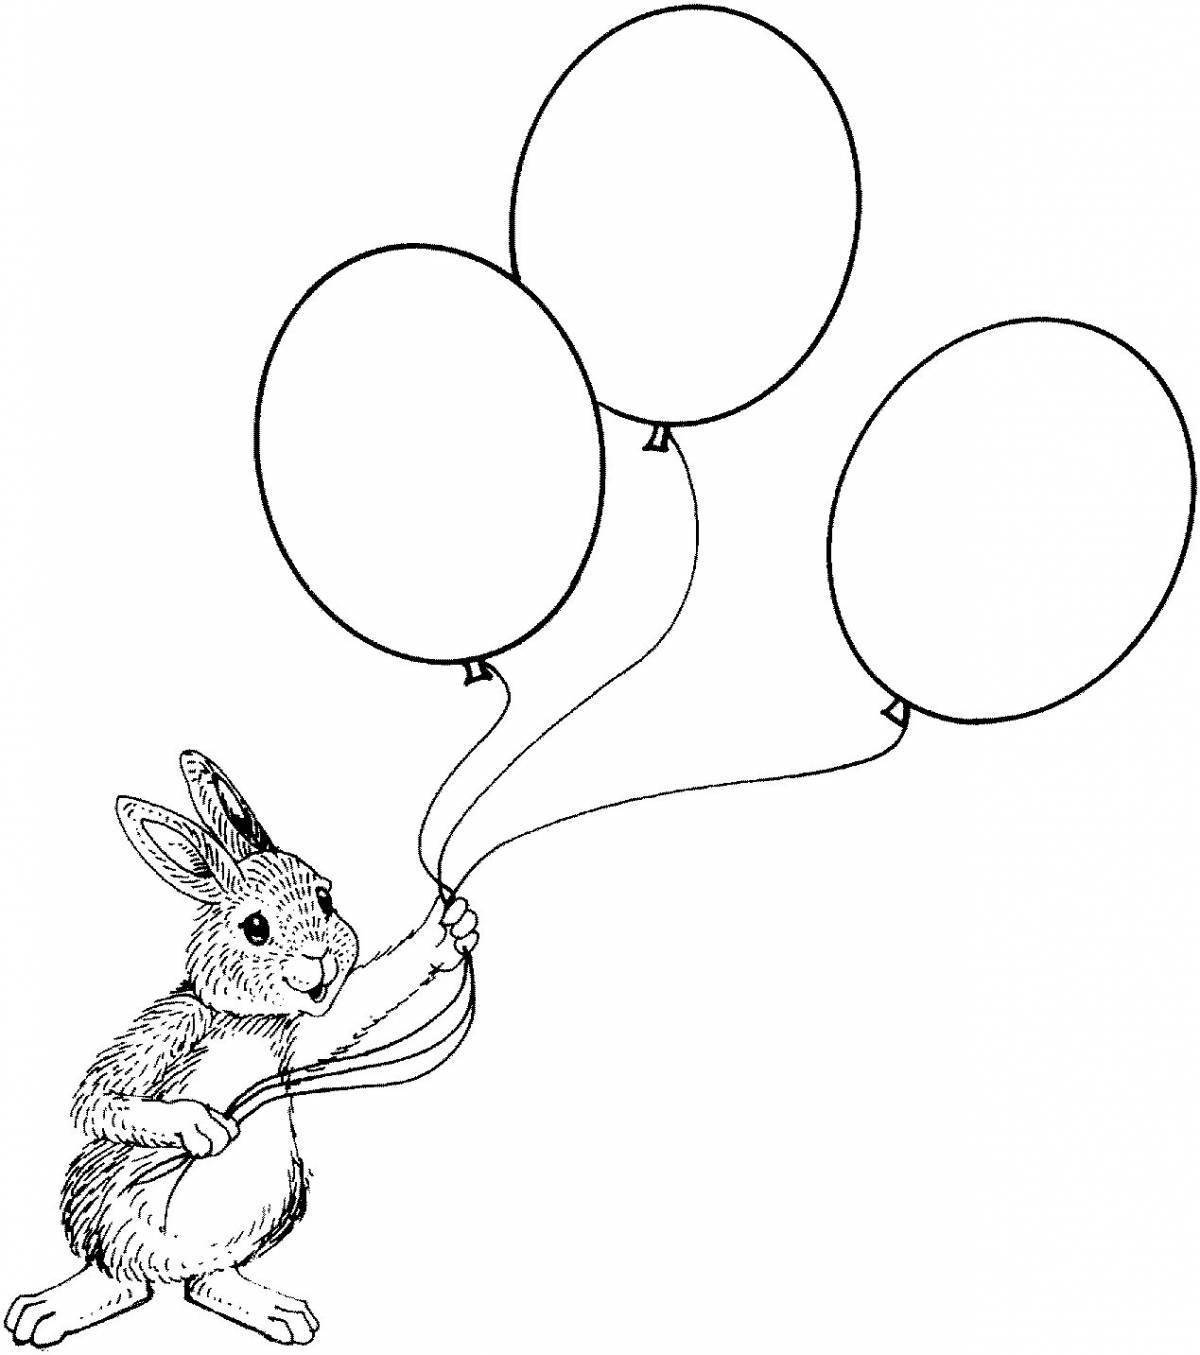 Раскрась воздушные шарики у мышки